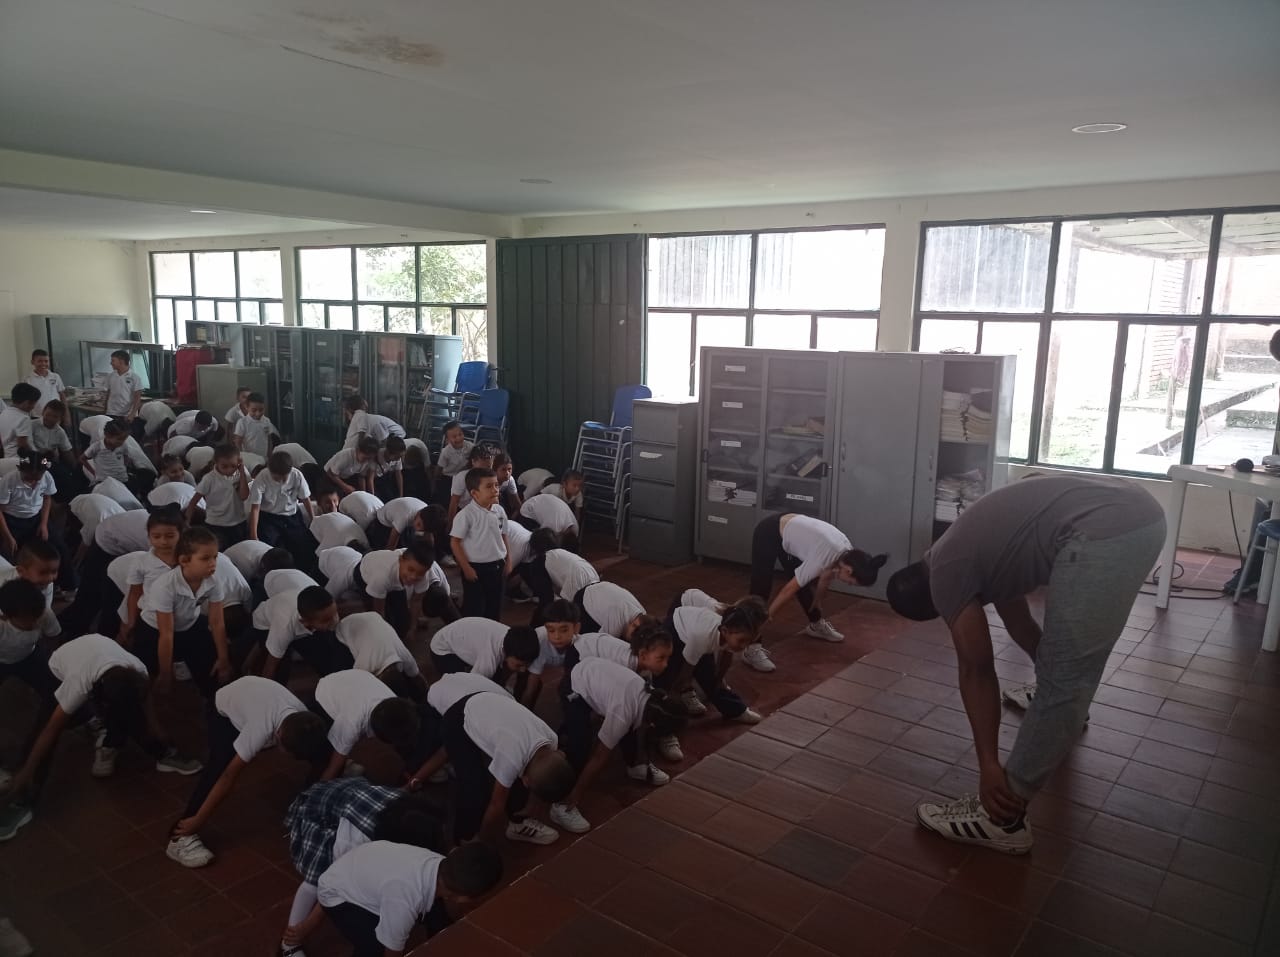 Estudiantes haciendo actividad física en el aula de clase